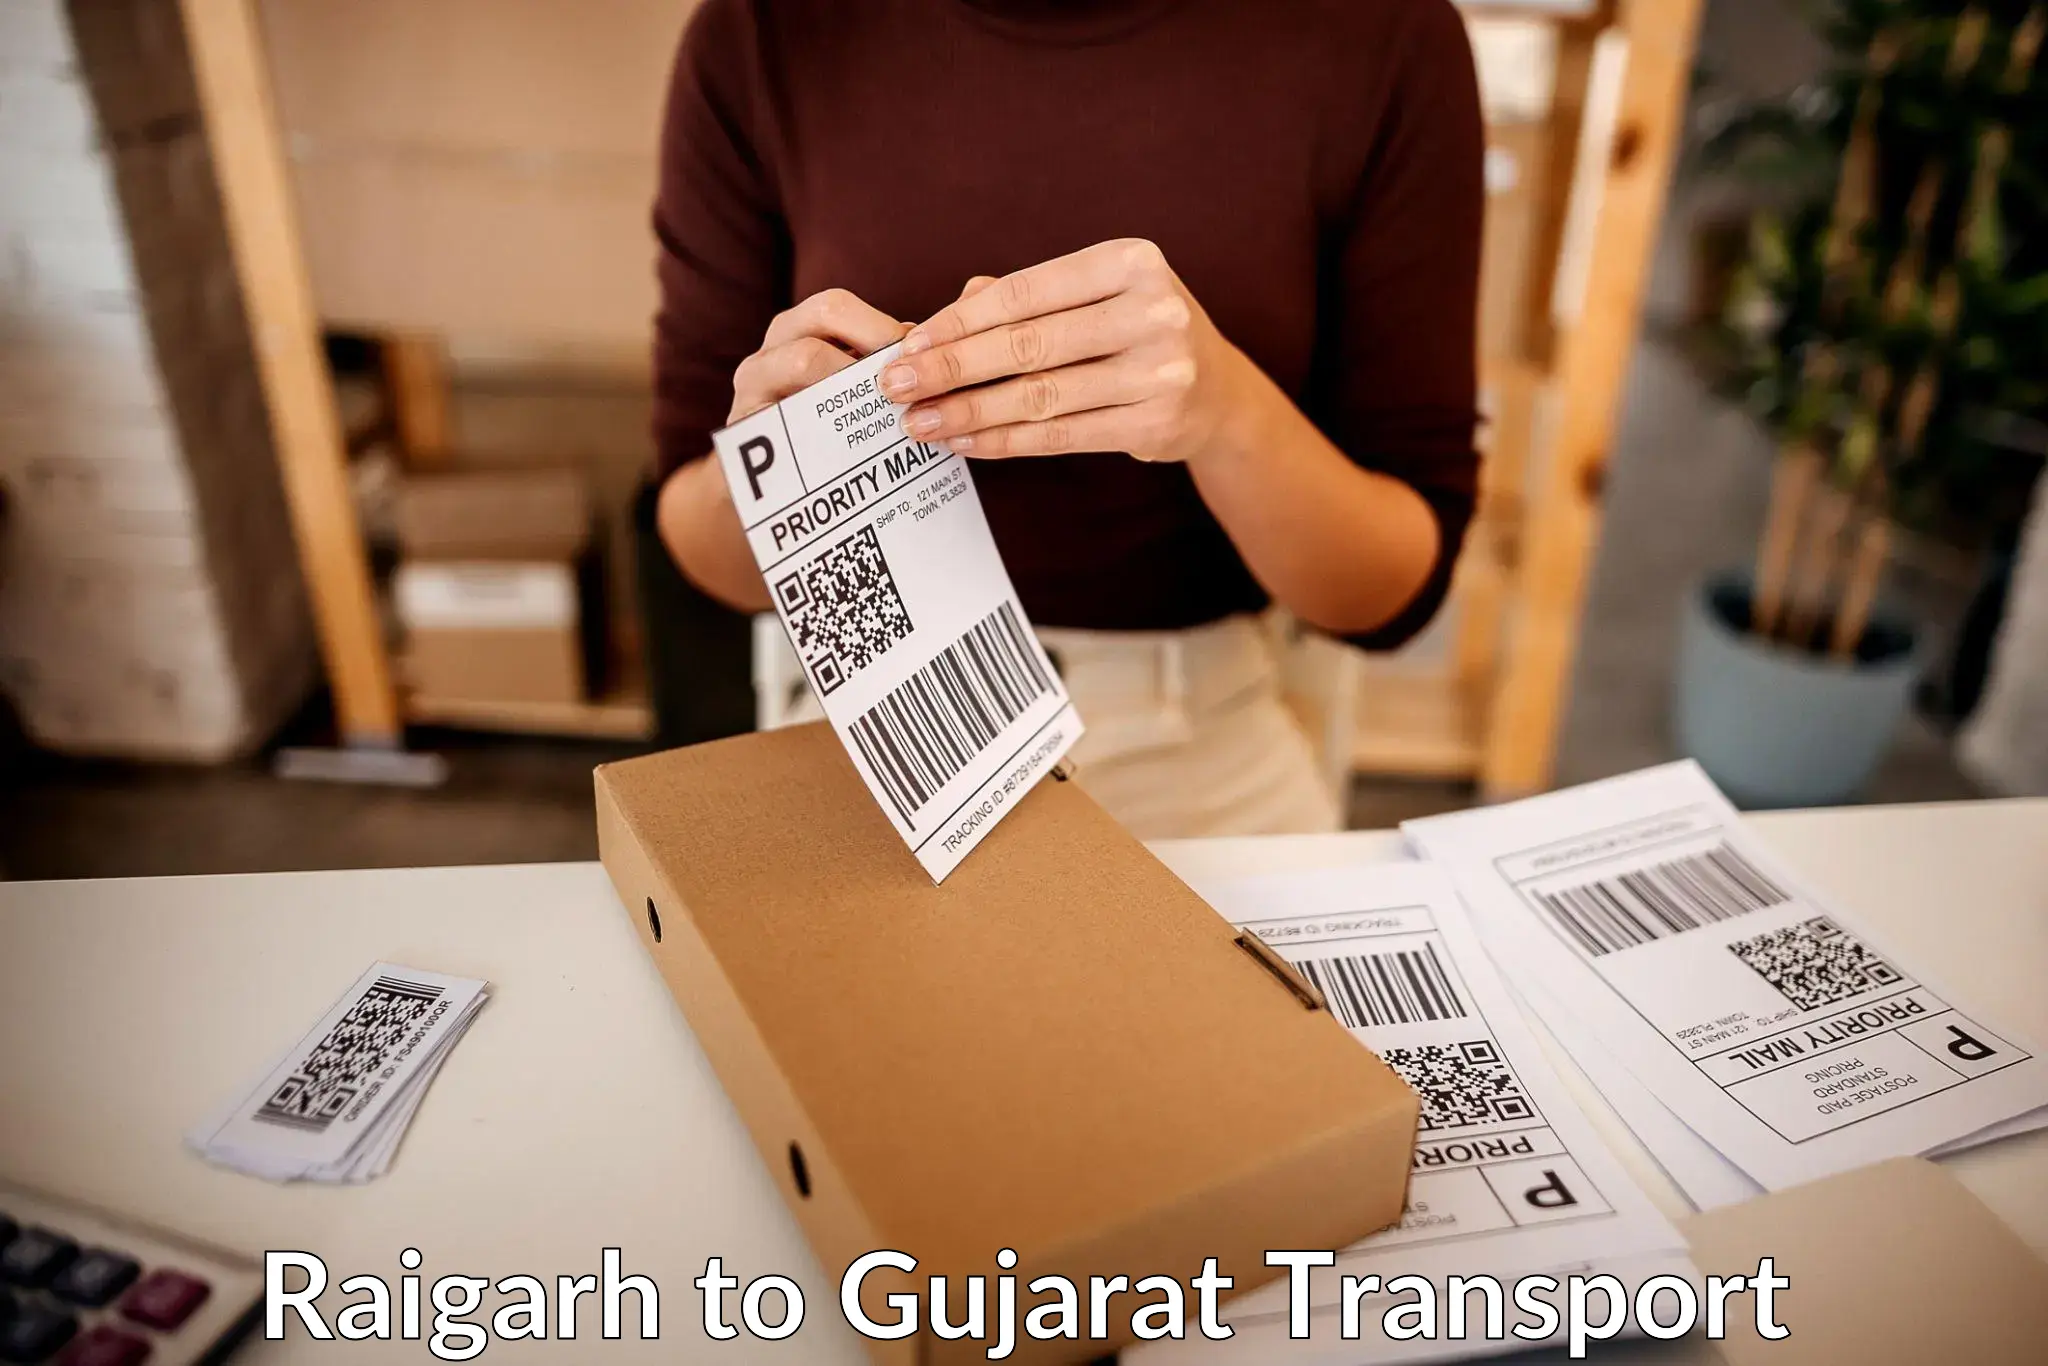 Cargo transportation services Raigarh to Nakhatrana